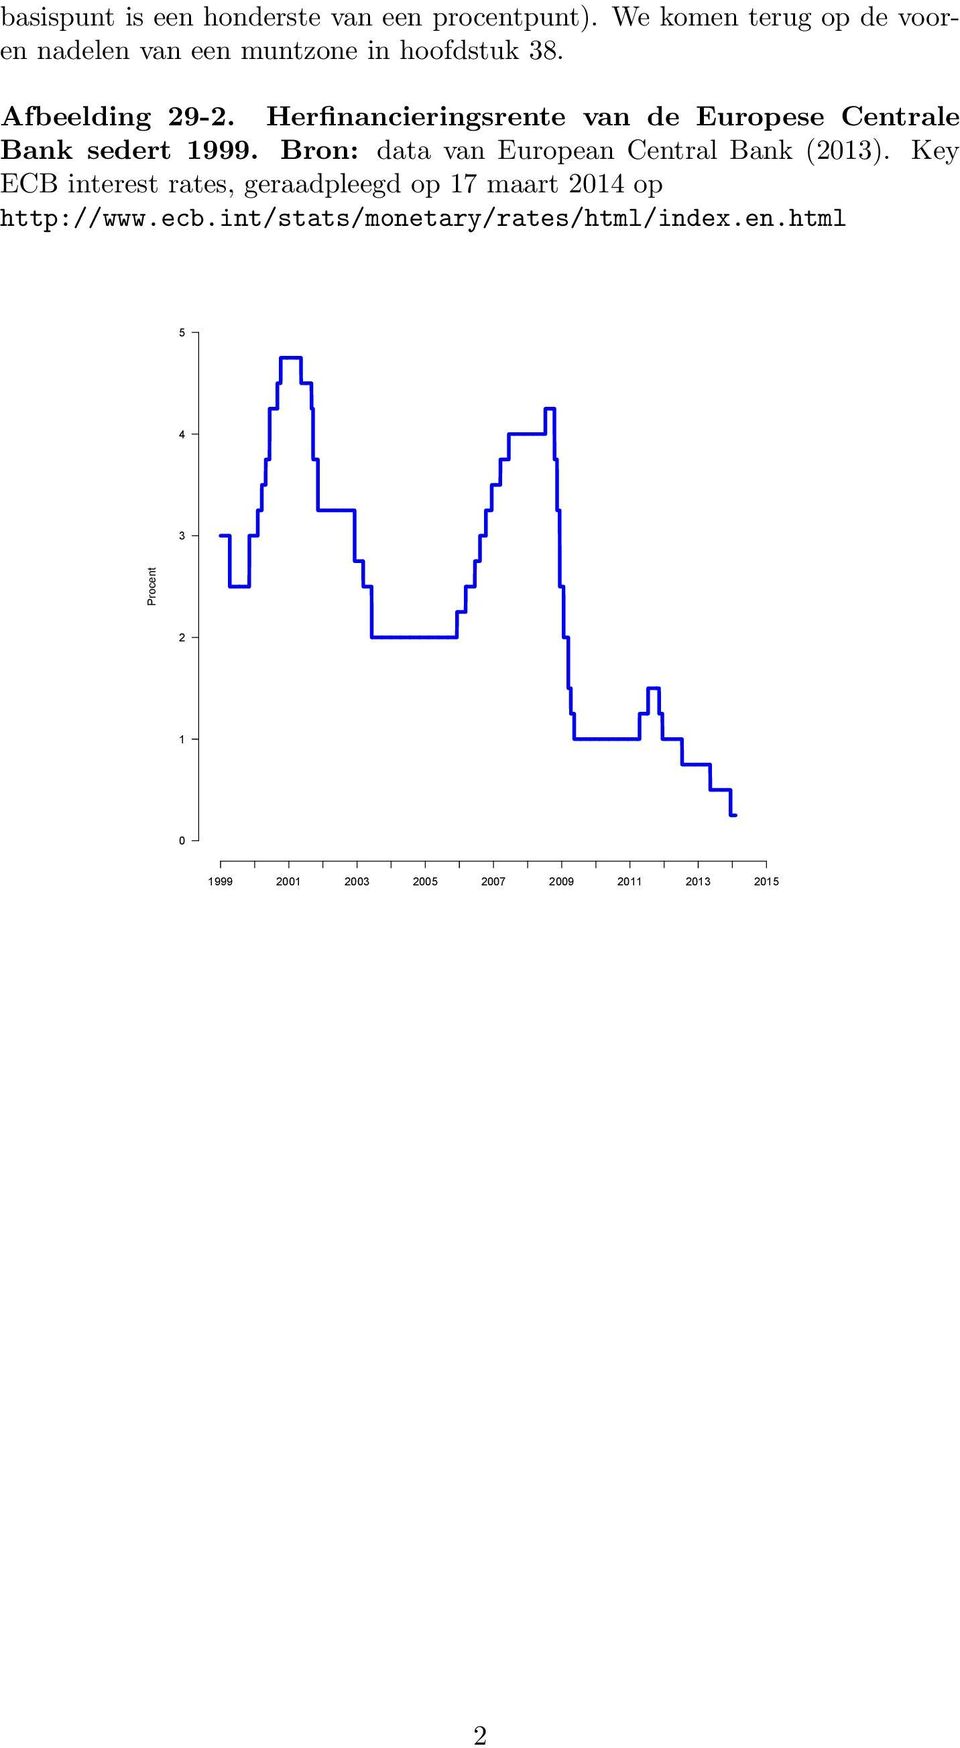 Herfinancieringsrente van de Europese Centrale Bank sedert 999.